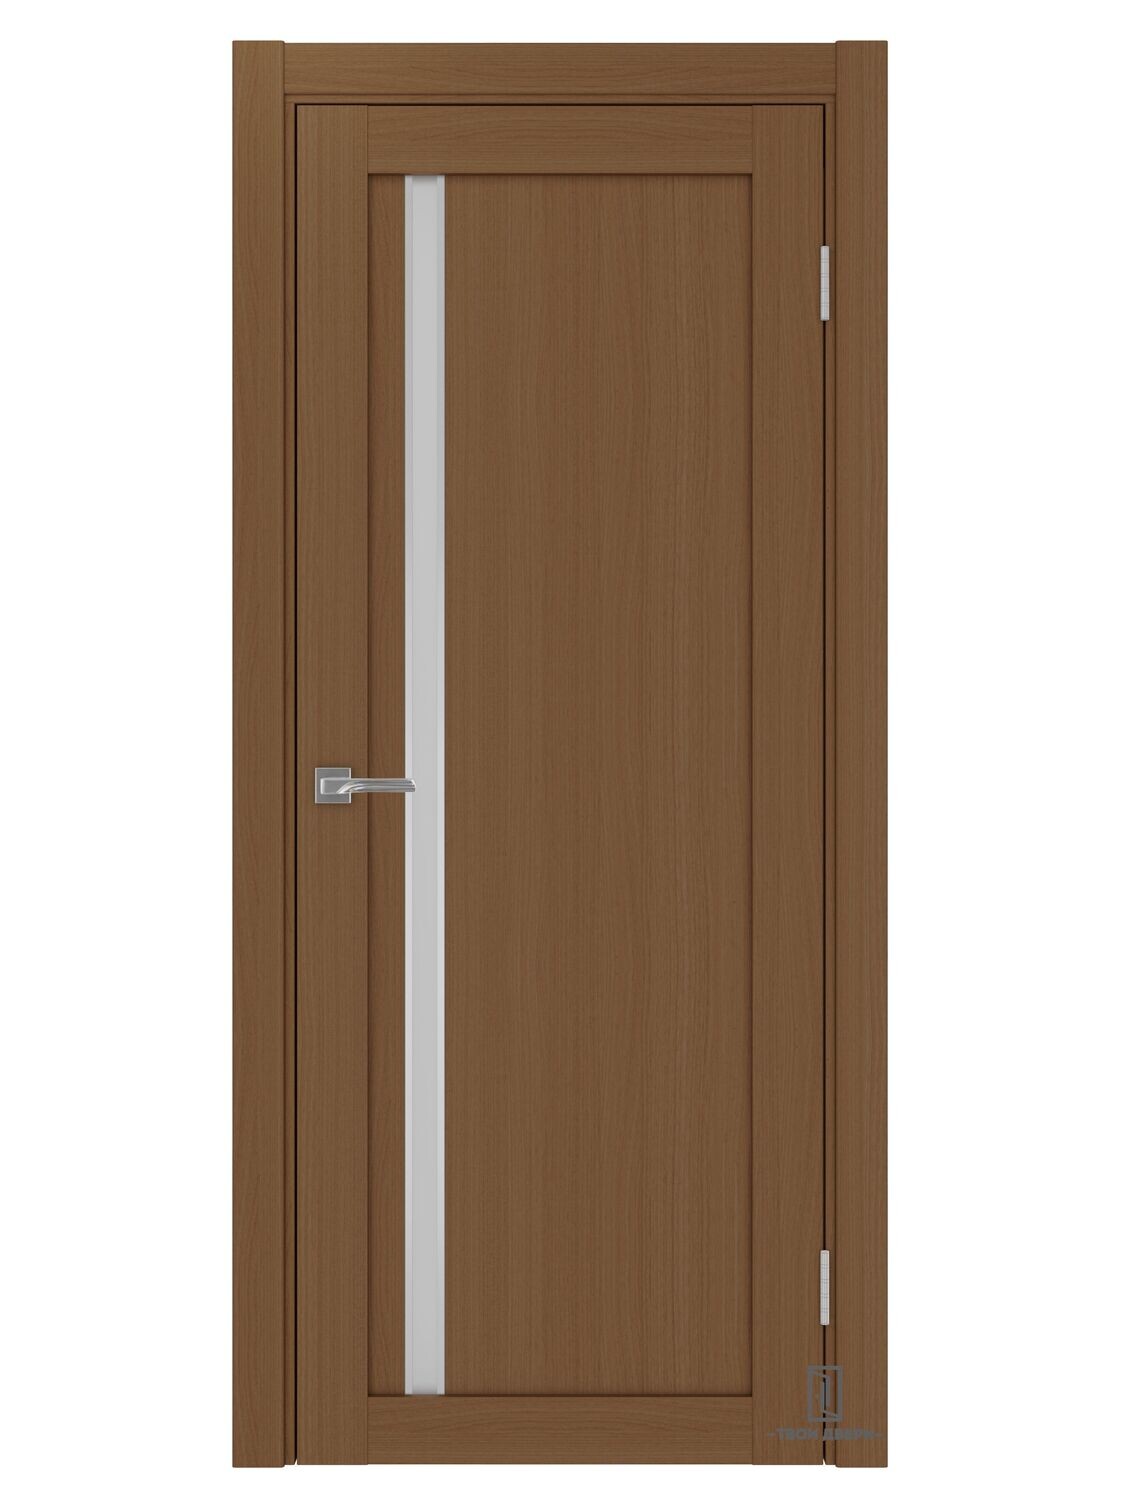 Дверь межкомнатная АПС 527 (молдинги), орех